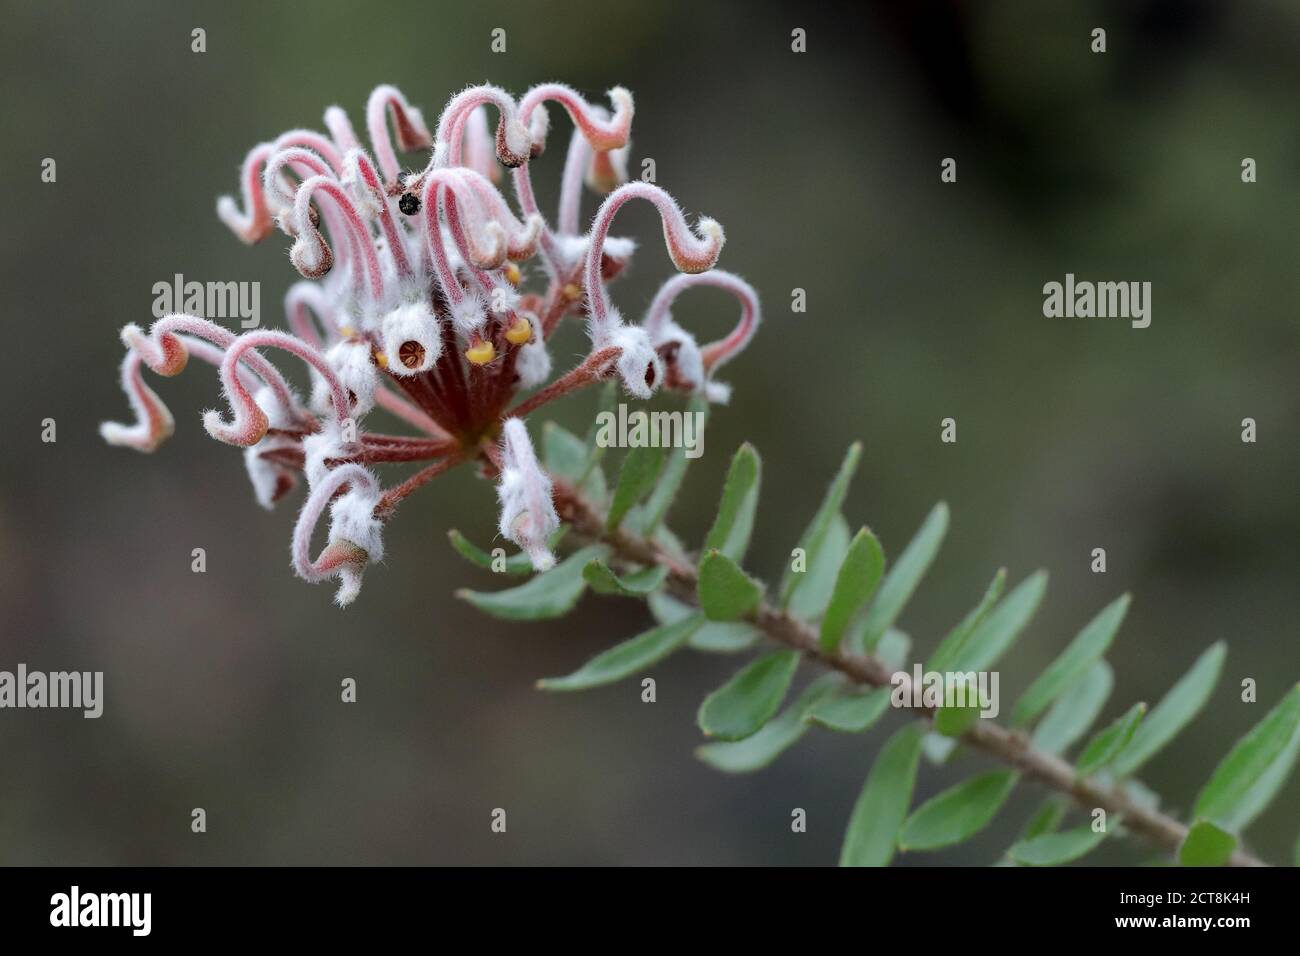 Grey Spider Flower plant in flower Stock Photo